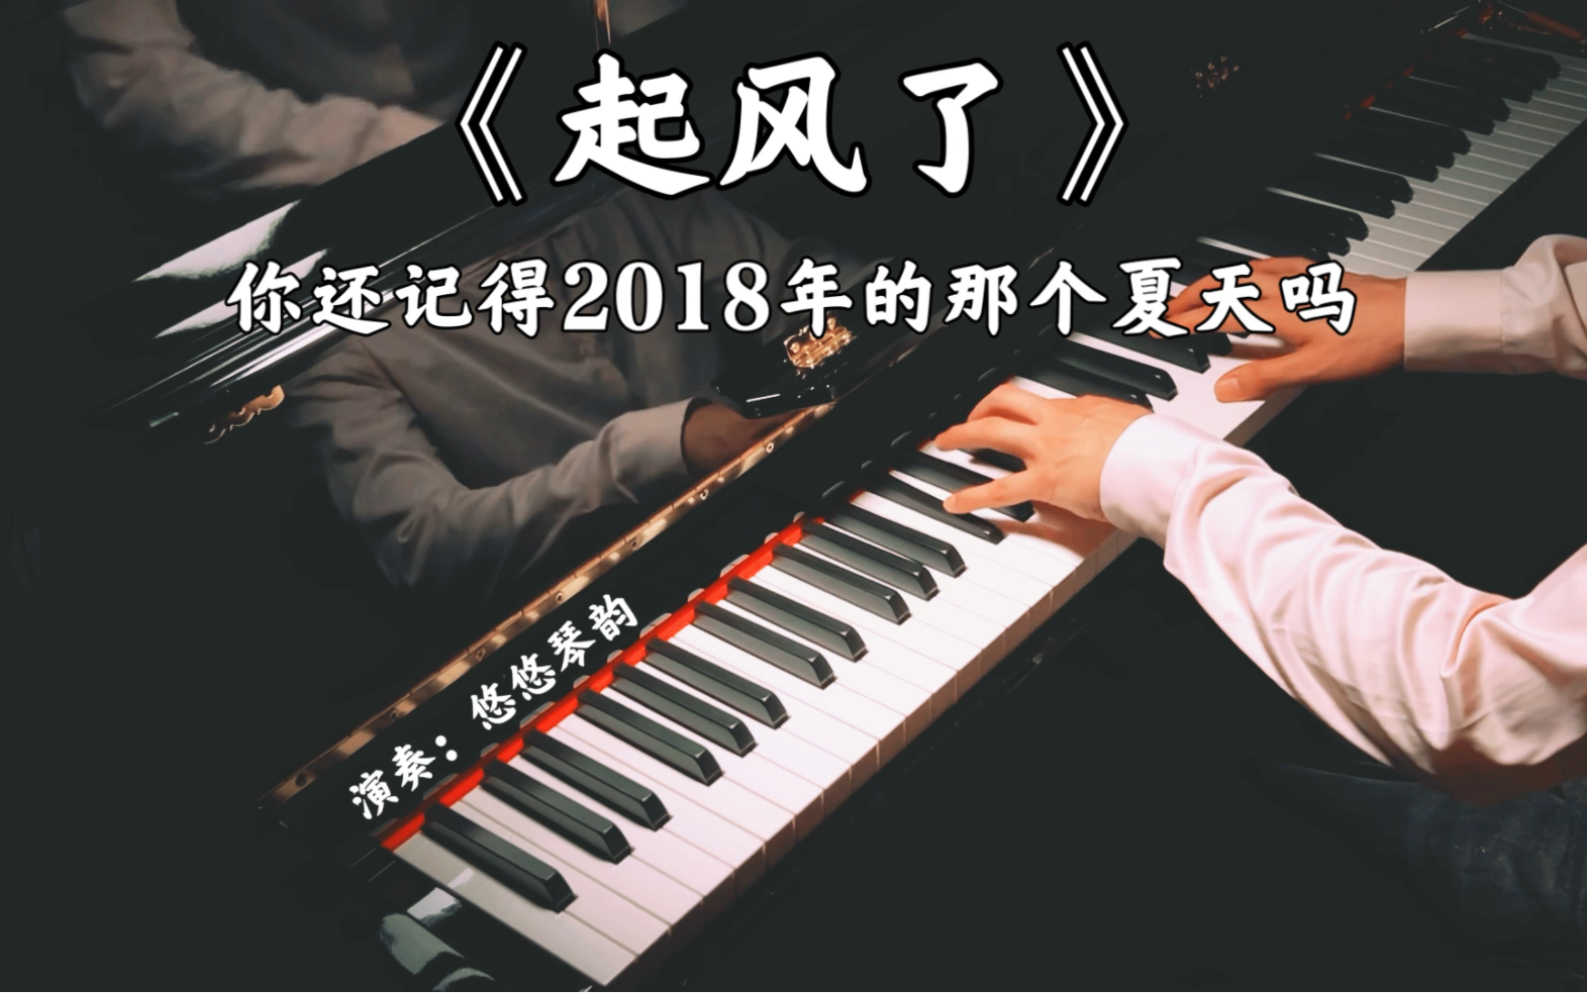 【钢琴】《起风了》带走了青春，你还记得2018年的那个夏天吗？